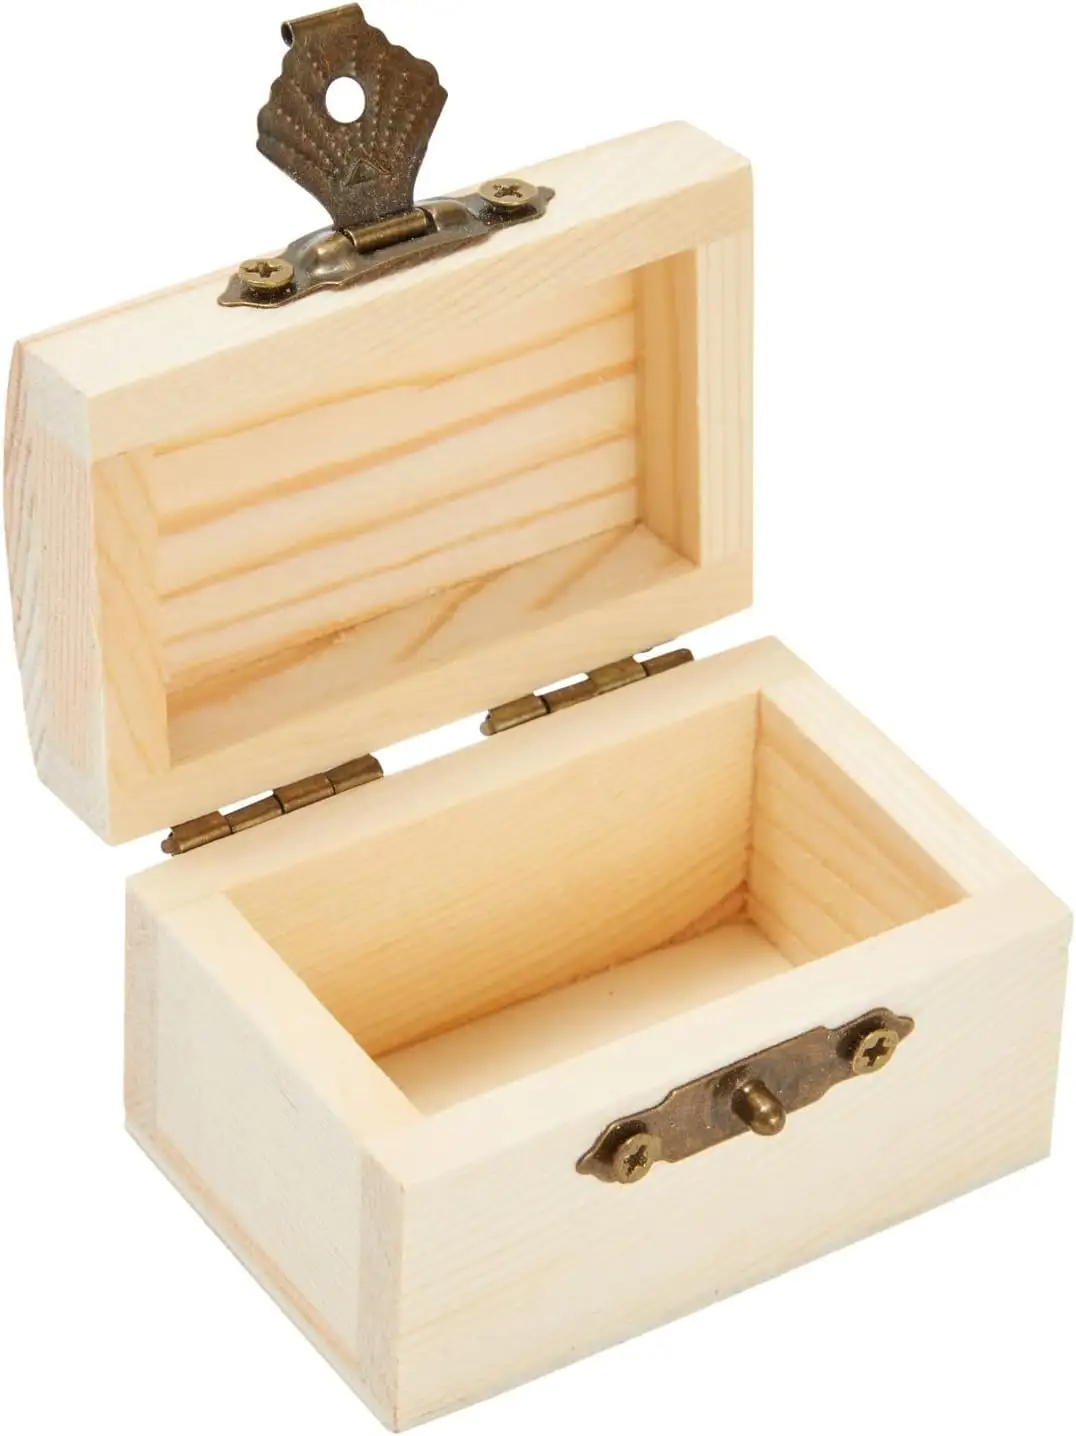 Scatola di legno scrigno scatola di legno con coperchio incernierato per l'artigianato